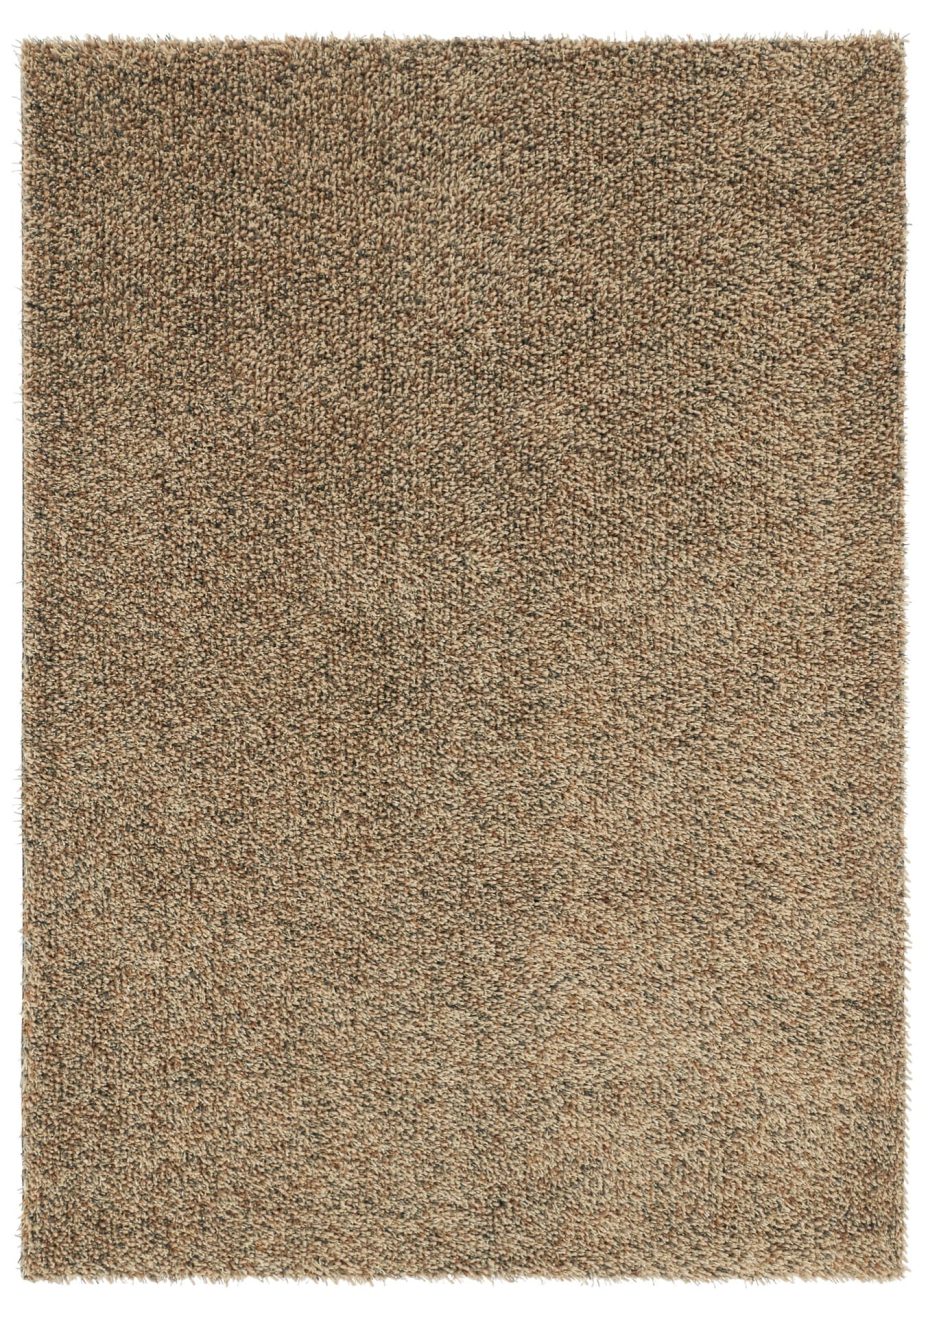 Quartz 67101 rug by Brink